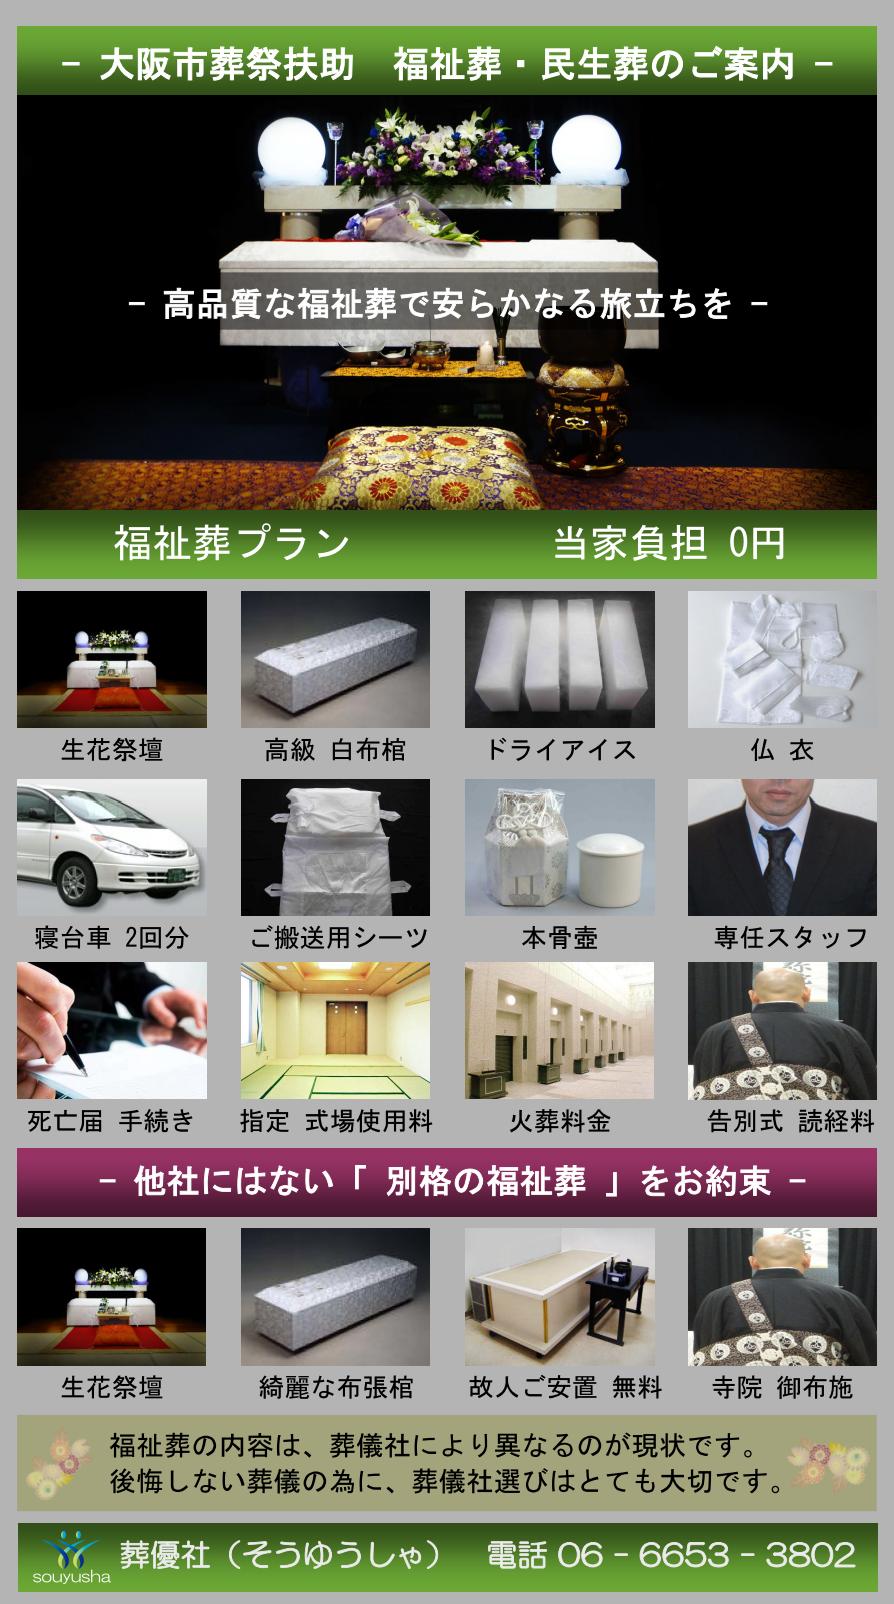 大阪市 鶴見区での福祉葬、生活保護者のお葬式のご案内